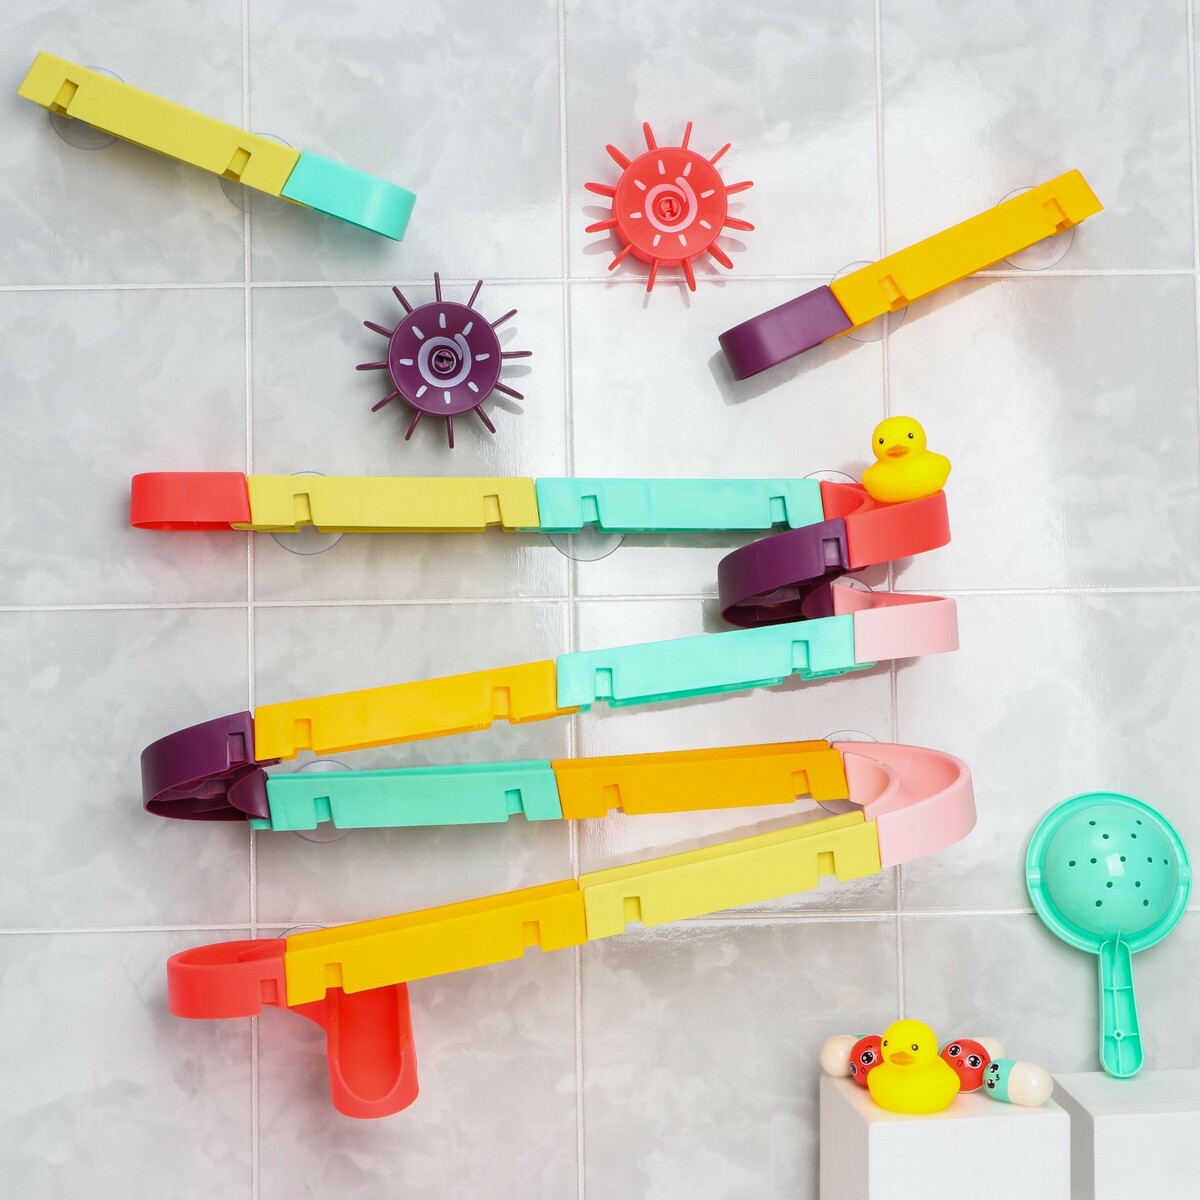 Игрушка водная горка для игры в ванной, конструктор, набор на присосках intellecta мягкая горка из детского игрового набора для развития малышей